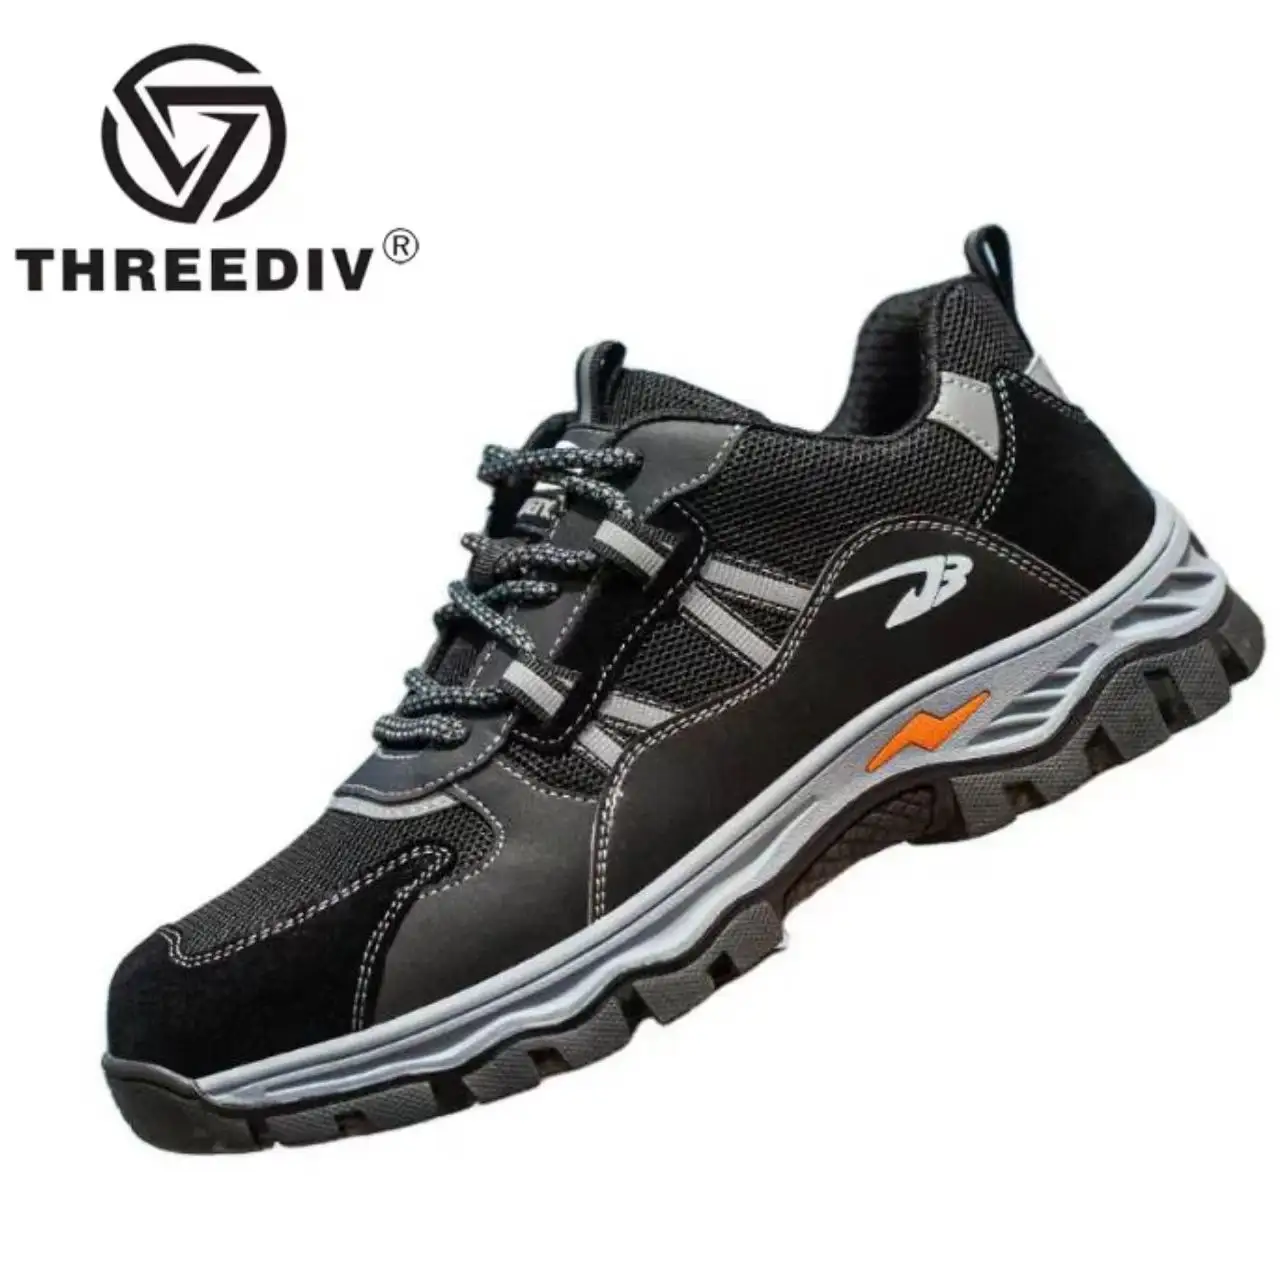 أحذية عمل واقية صناعية جيدة التهوية من THREEDIV الأعلى مبيعًا ، أحذية أمان مضادة للثقب ومقاومة للسحق من الفولاذ